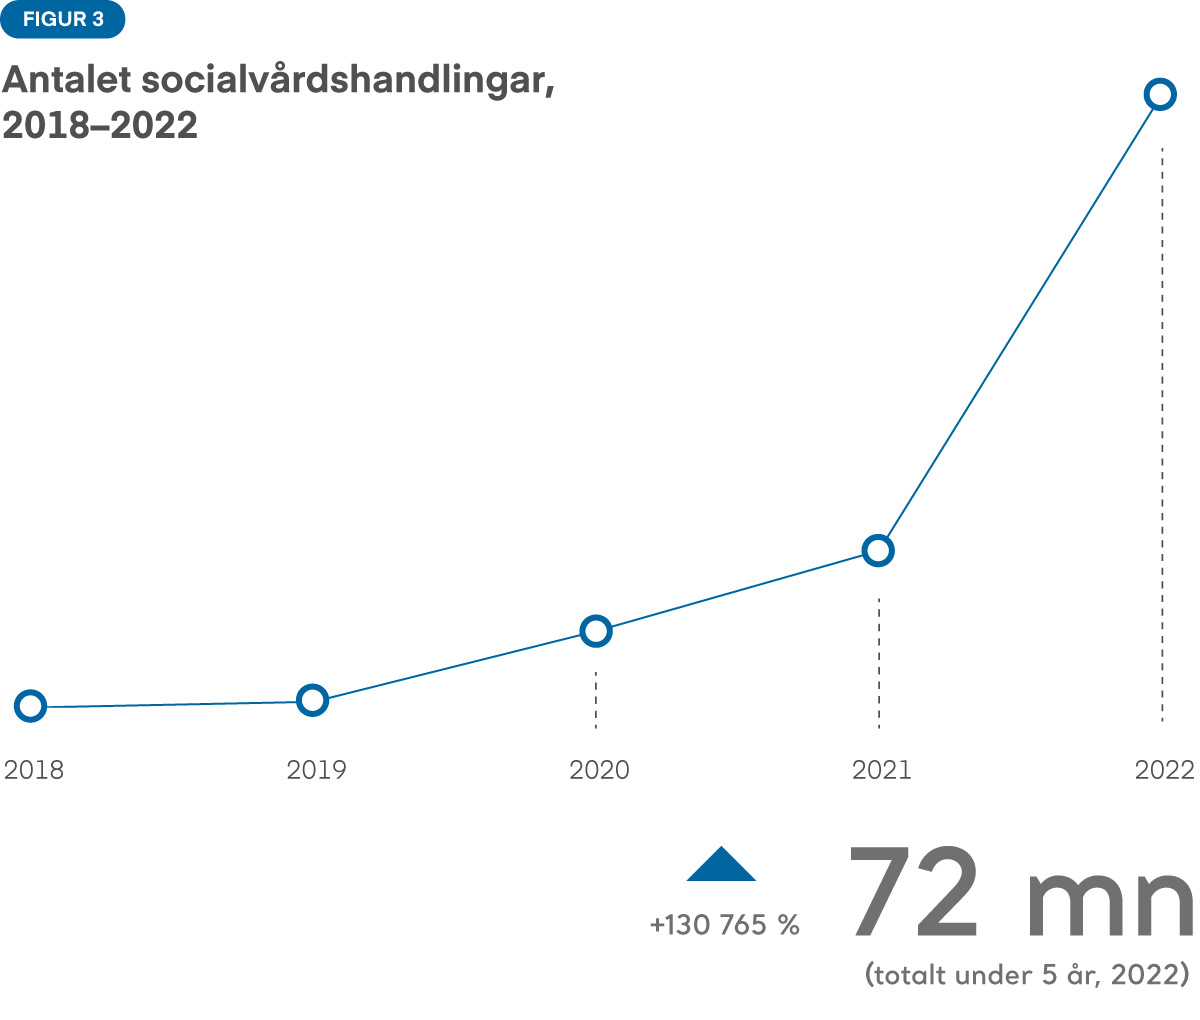 Figur 3: Antalet socialvårdshandlingar i Kanta-tjänsterna har ökat mycket kraftigt, särskilt åren 2021 och 2022. Åren 2018 och 2019 var ökningen mycket liten. År 2022 fanns det 72 miljoner handlingar i Kanta-tjänsterna. 